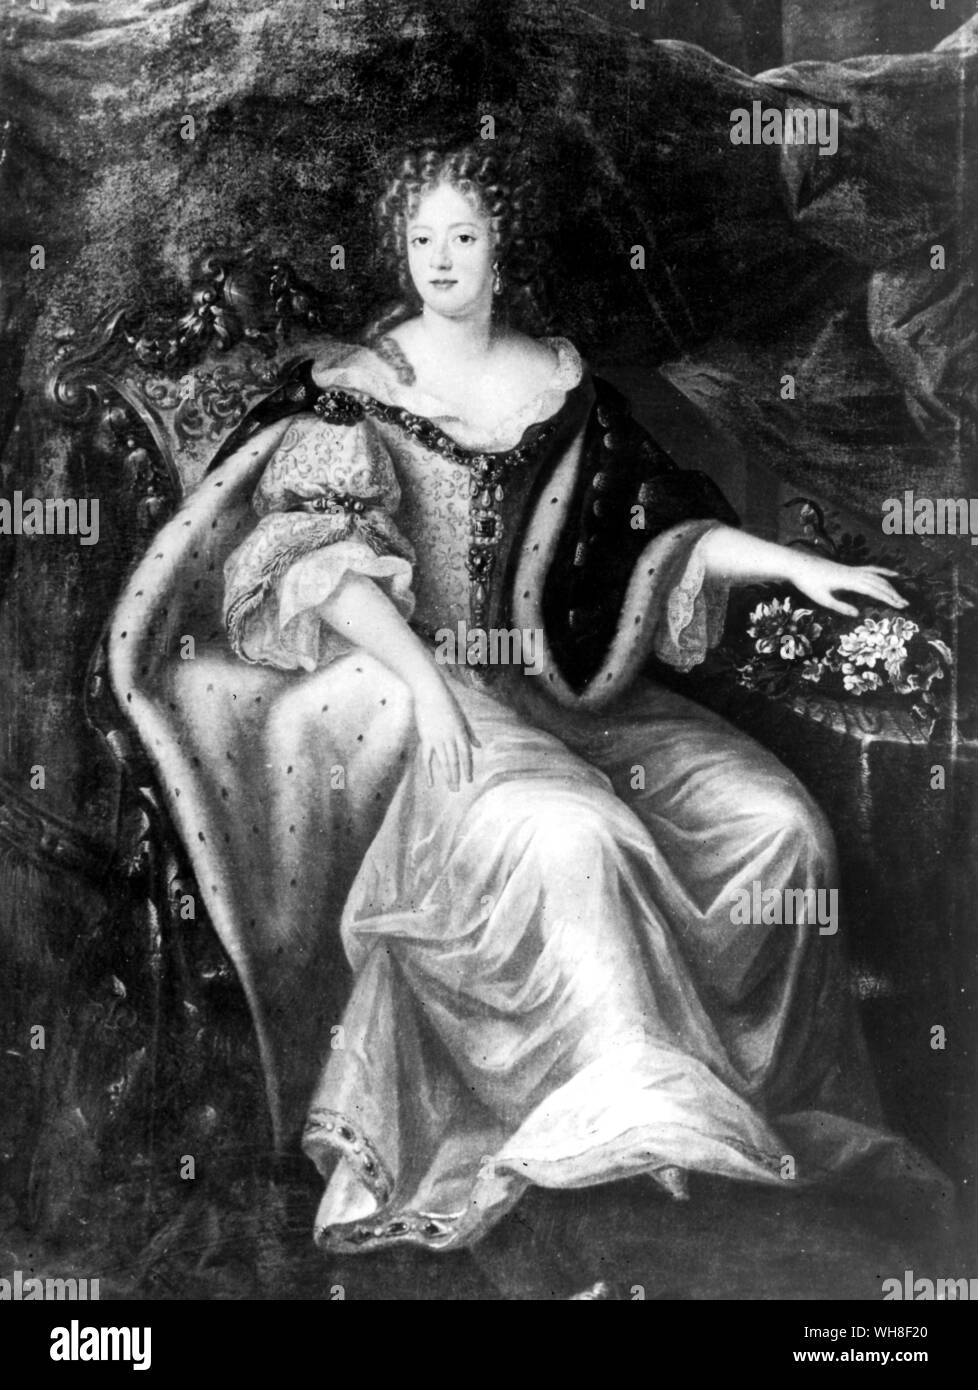 Marie Therese, figlia del principe de Conde e grand figlia del Grand Conde. Maria Teresa di Spagna (francese: Marie Thérèse) (1638-1683), wa regina consorte della Francia come moglie di Luigi XIV di Francia. Il Re Sole da Nancy Mitford, pagina 124. Foto Stock